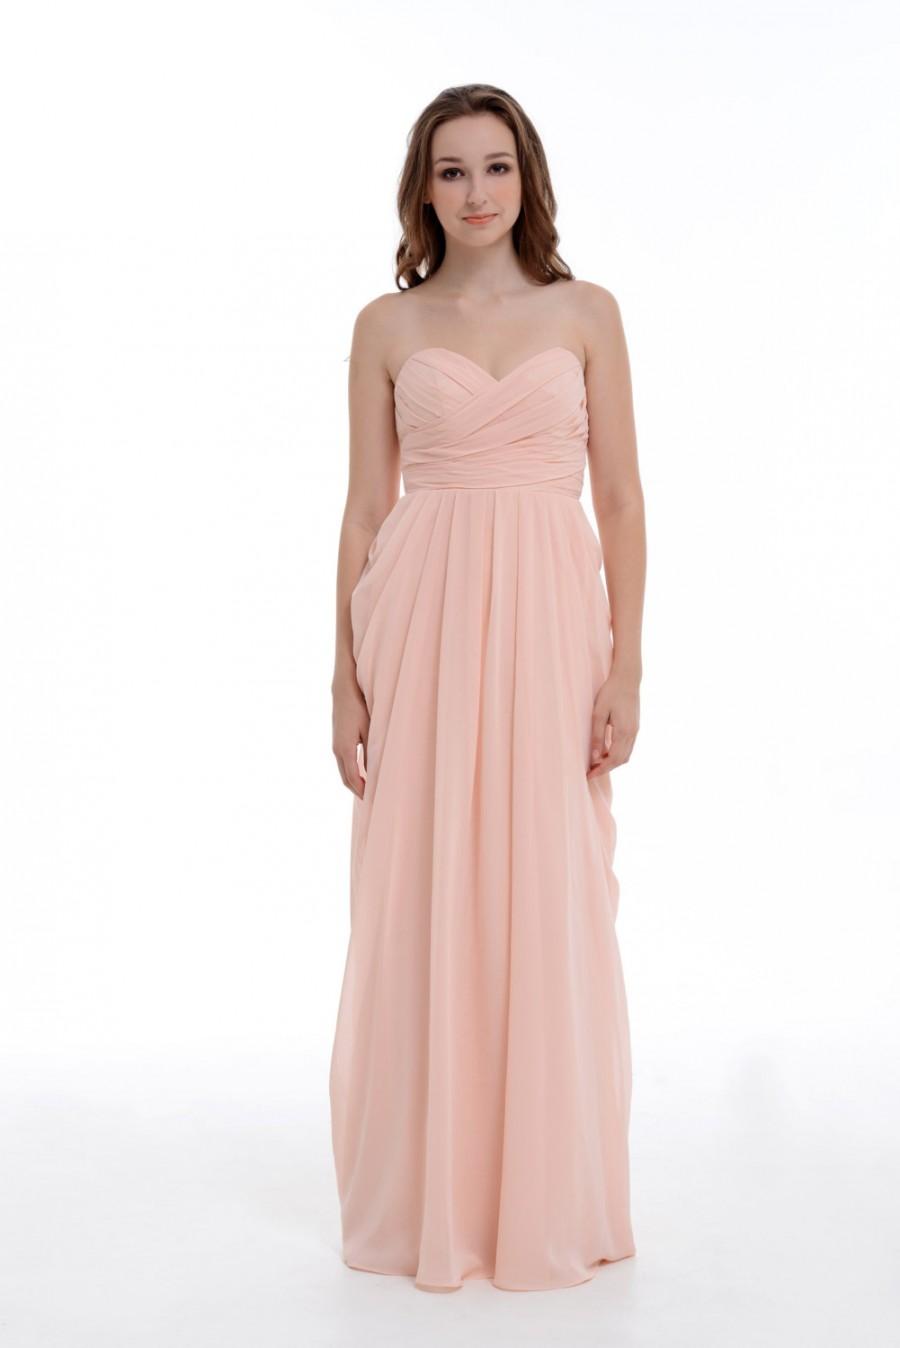 زفاف - Prom Dress 2015, Sweetheart Pearl Pink A-Line/Princess Floor-Length Chiffon Bridesmaid Dress With Ruffle